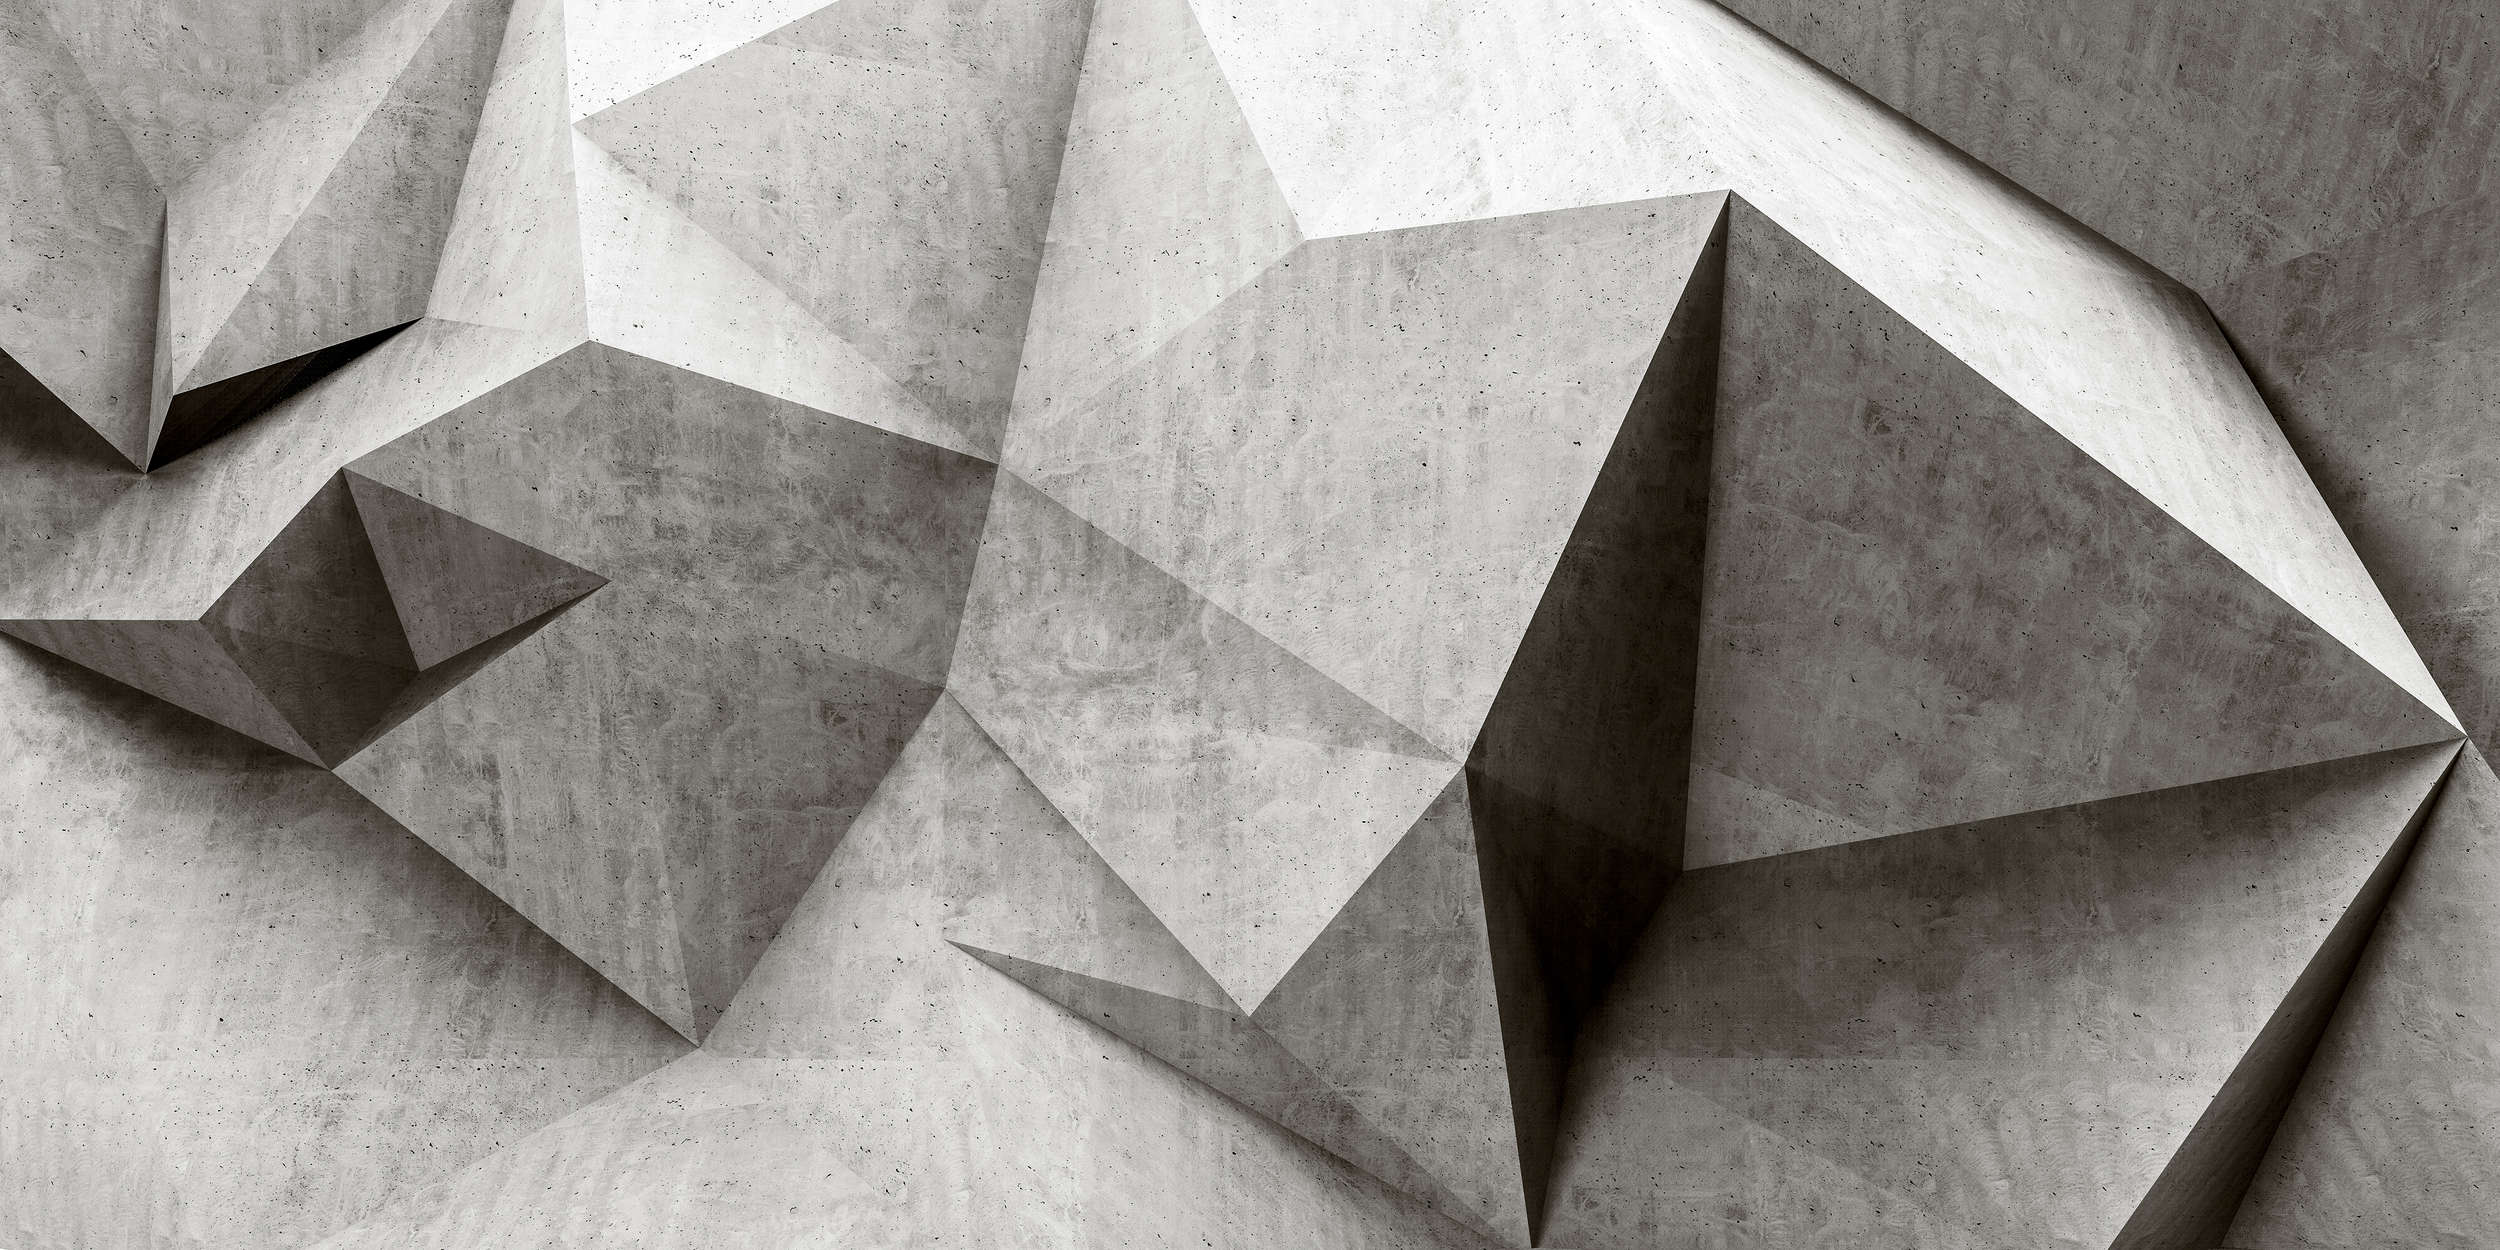             Boulder 1 - Papel Pintado Polígonos de Hormigón 3D - Gris, Negro | Tejido sin tejer texturado
        